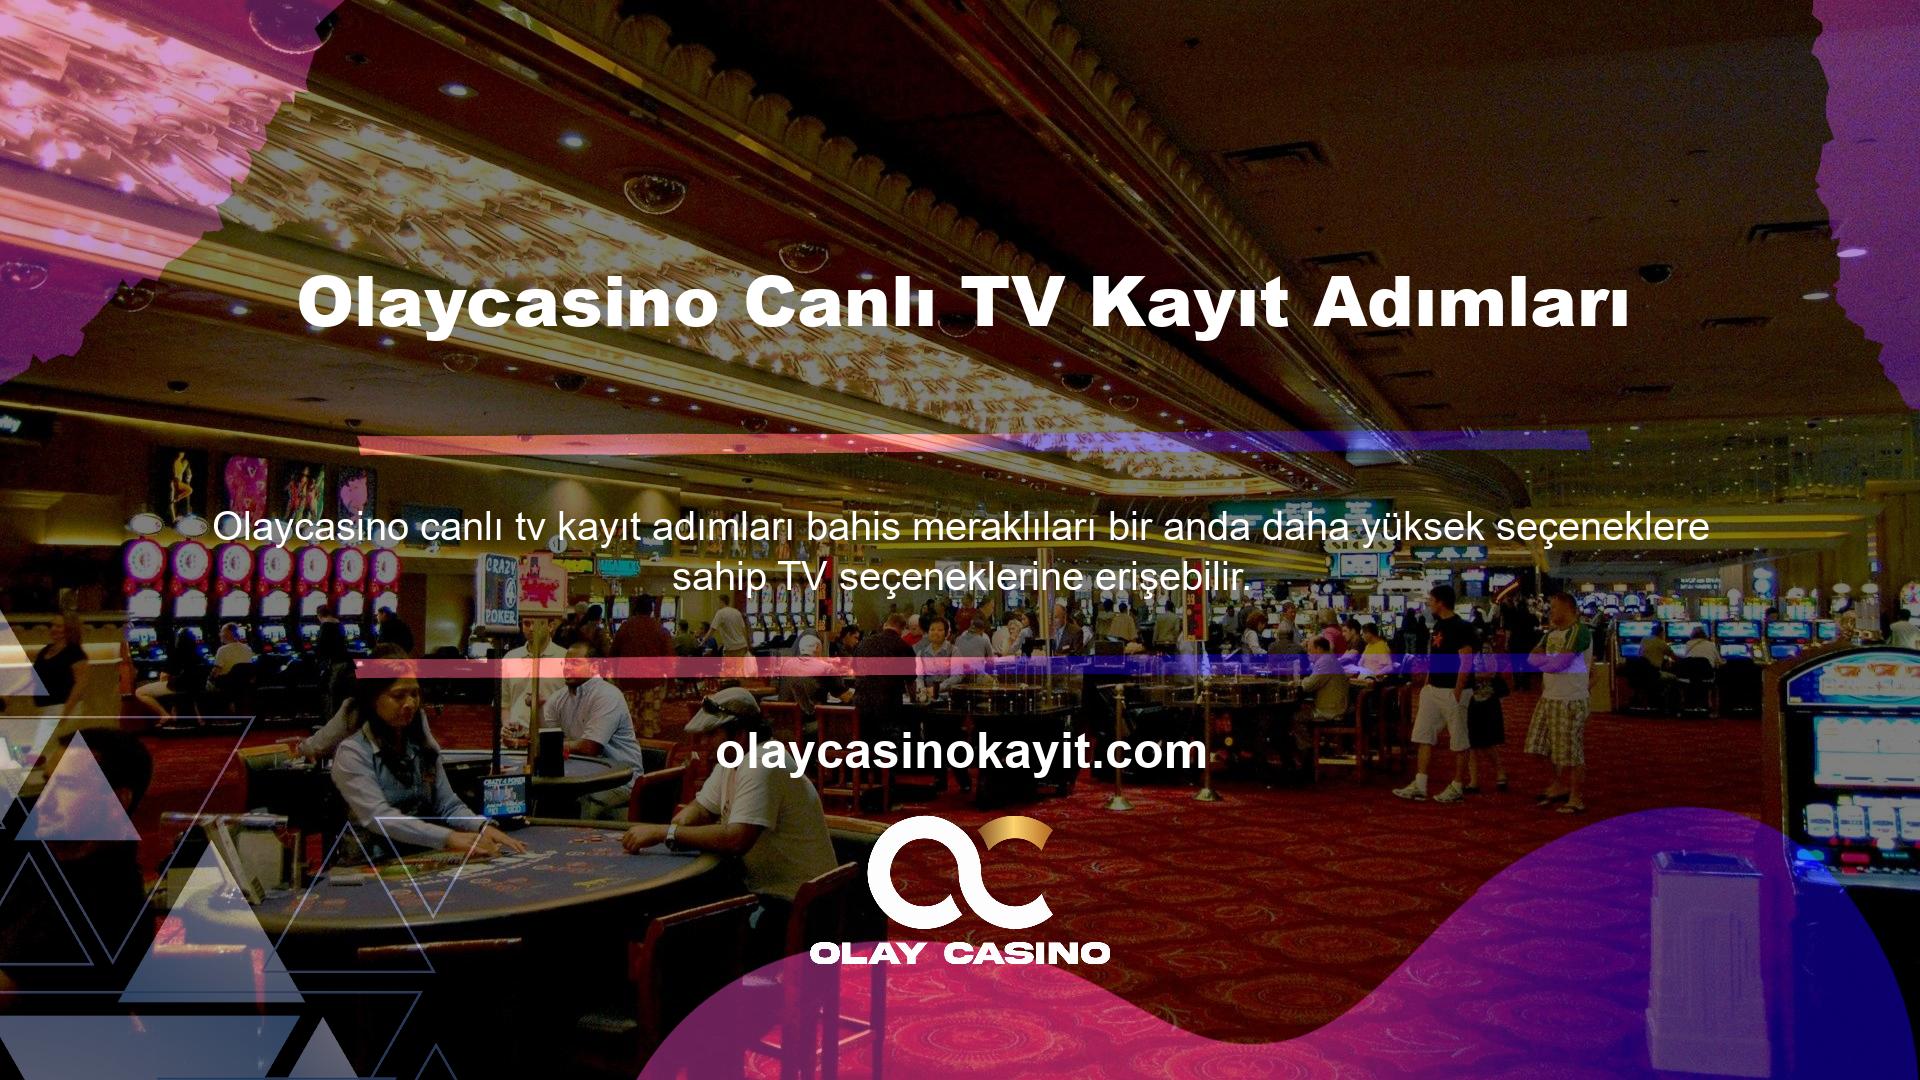 Olaycasino Live TV giriş işleminde bahis tutkunları için önemli bir seçenek olan Olaycasino TV seçeneğini kullanma imkanı bulunmaktadır